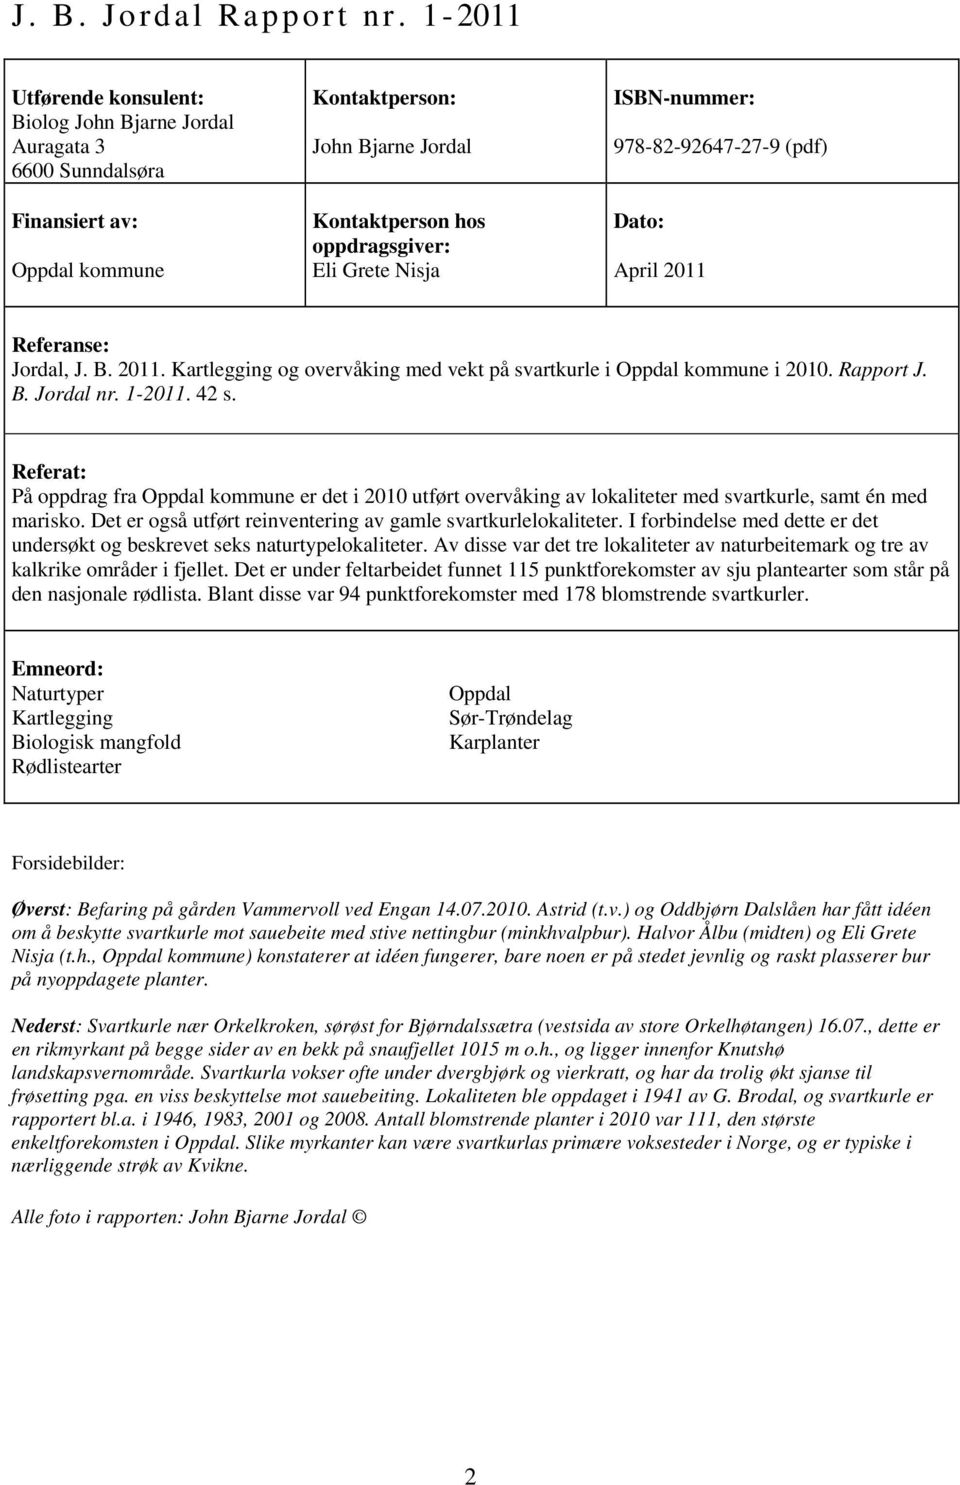 ISBN-nummer: 978-82-92647-27-9 (pdf) Dato: April 2011 Referanse: Jordal, J. B. 2011. Kartlegging og overvåking med vekt på svartkurle i Oppdal kommune i 2010. Rapport J. B. Jordal nr. 1-2011. 42 s.